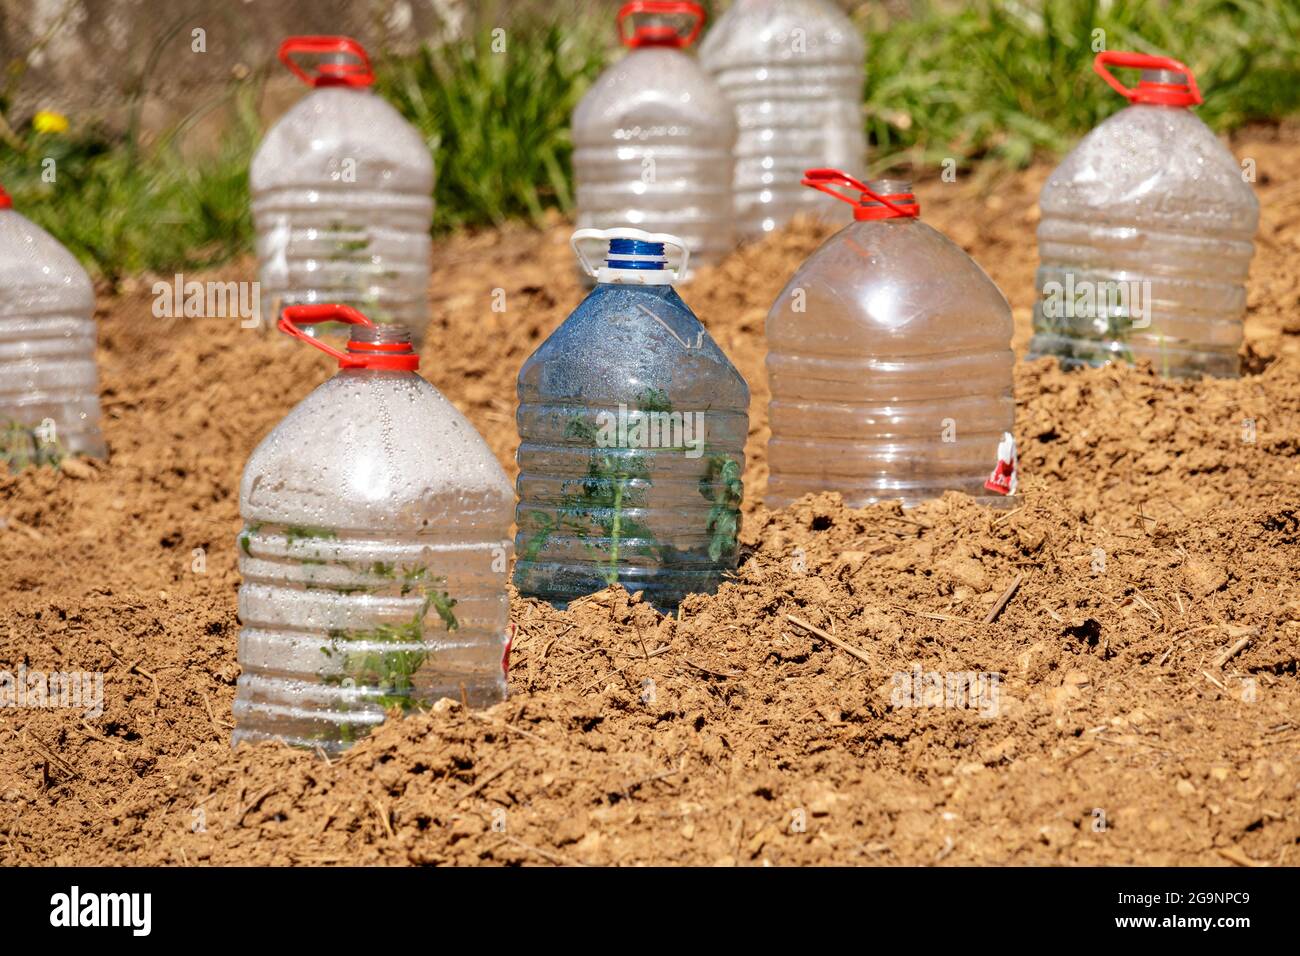 Bouteilles d'eau en plastique utilisées pour la culture et la culture de légumes Banque D'Images